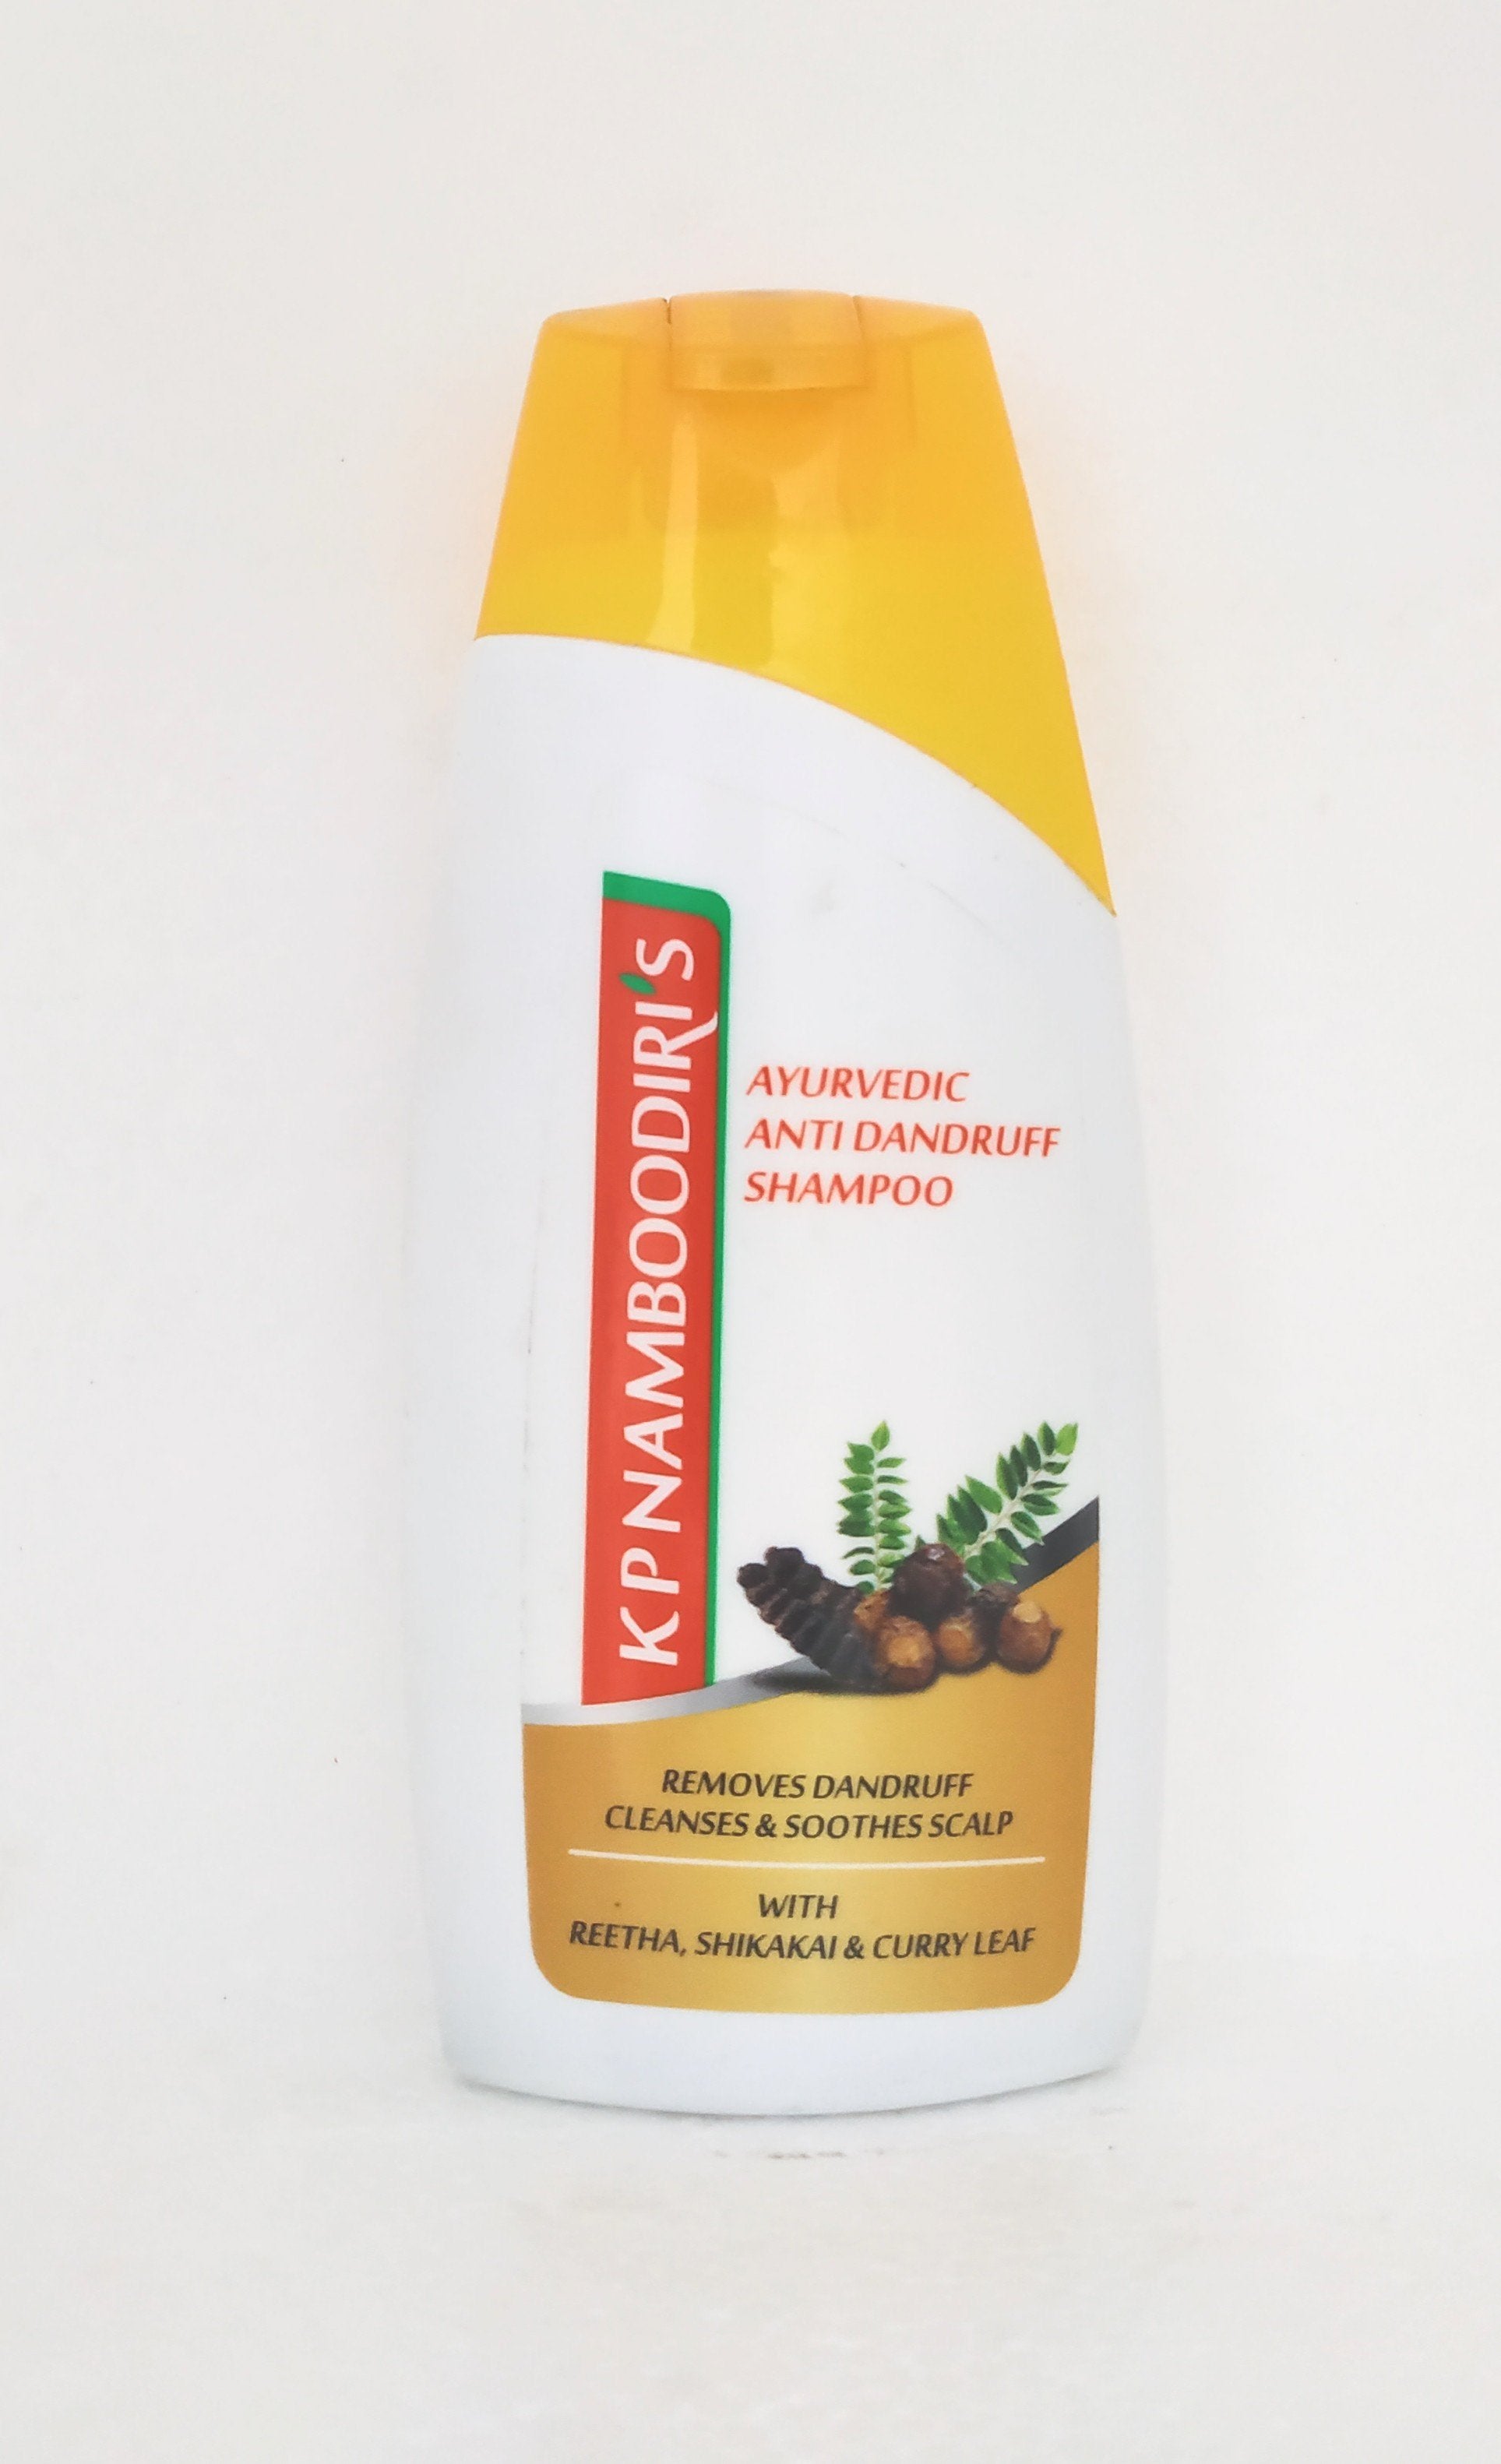 Shop KP Namboodiri Anti Dandruff Shampoo 100ml at price 65.00 from KP Namboodiri Online - Ayush Care